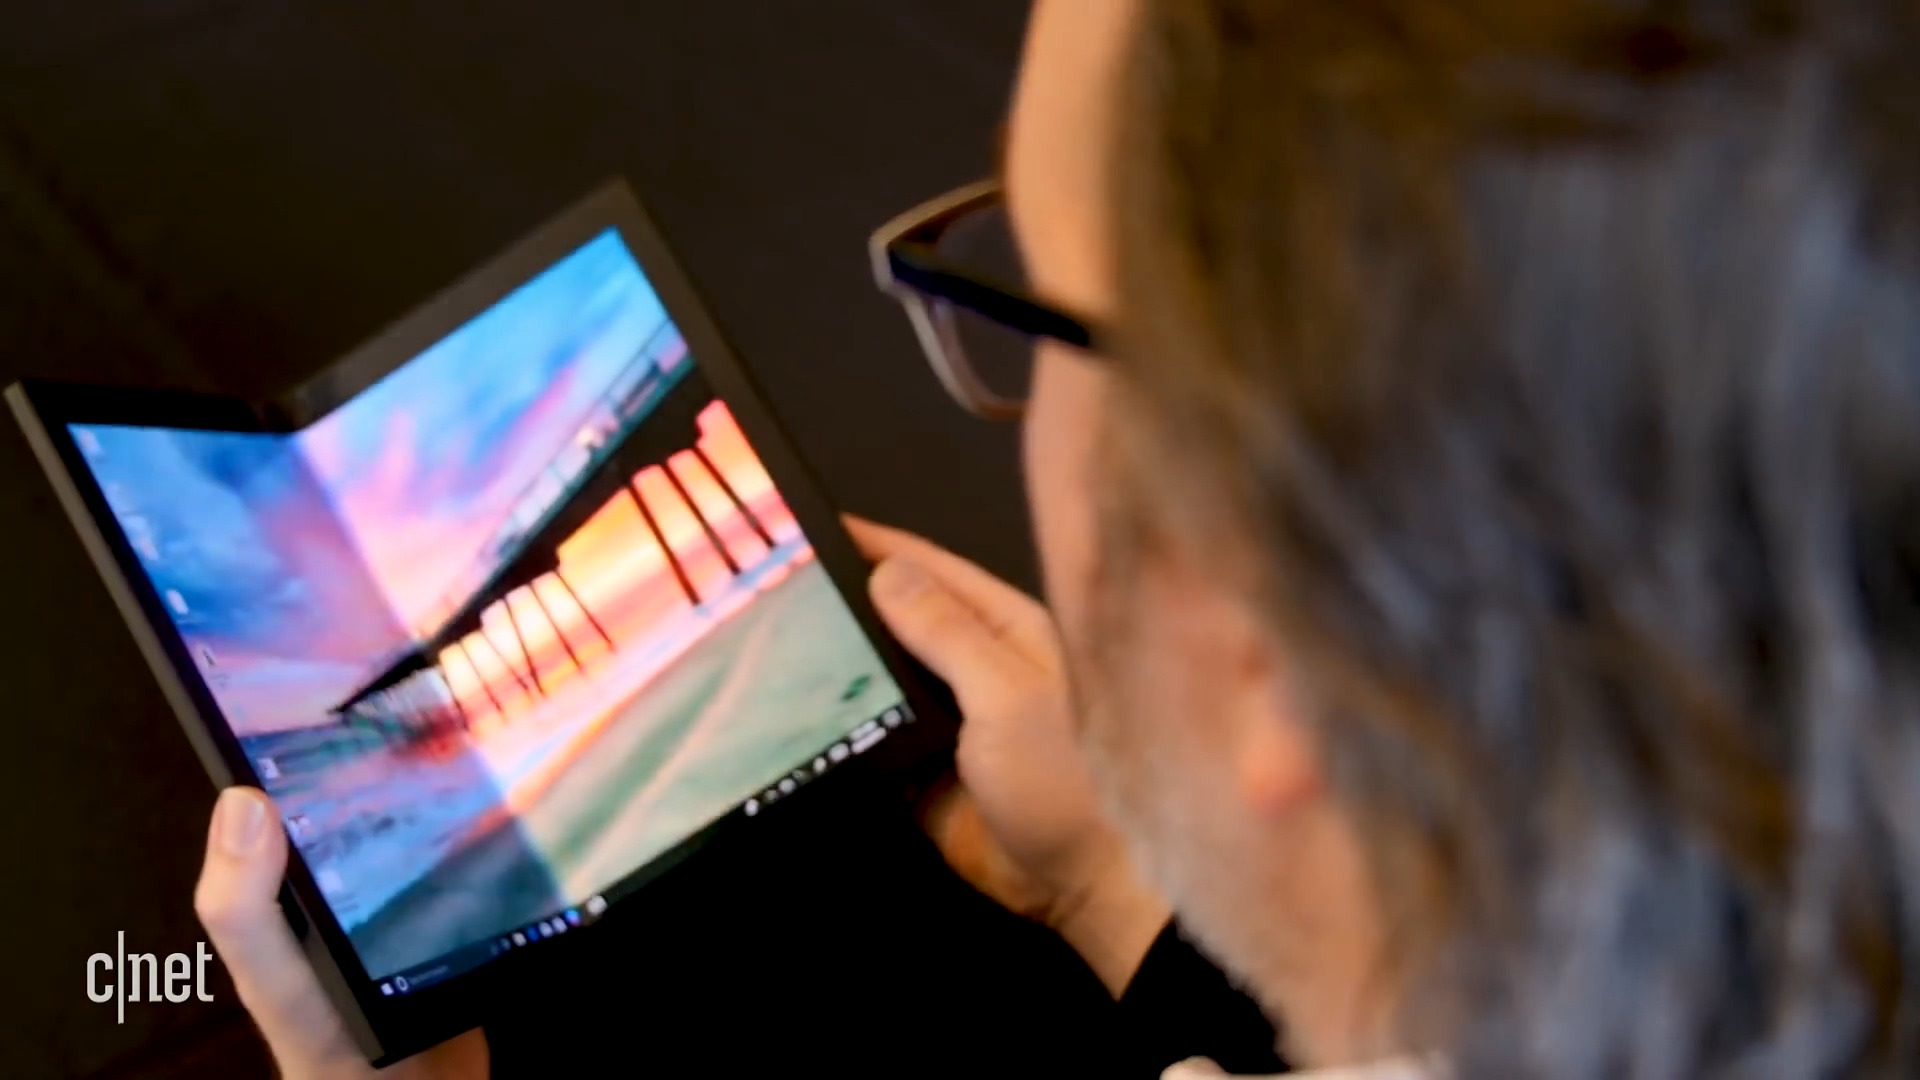 联想发布全球首款折叠屏电脑 2020年上市、上手视频一览